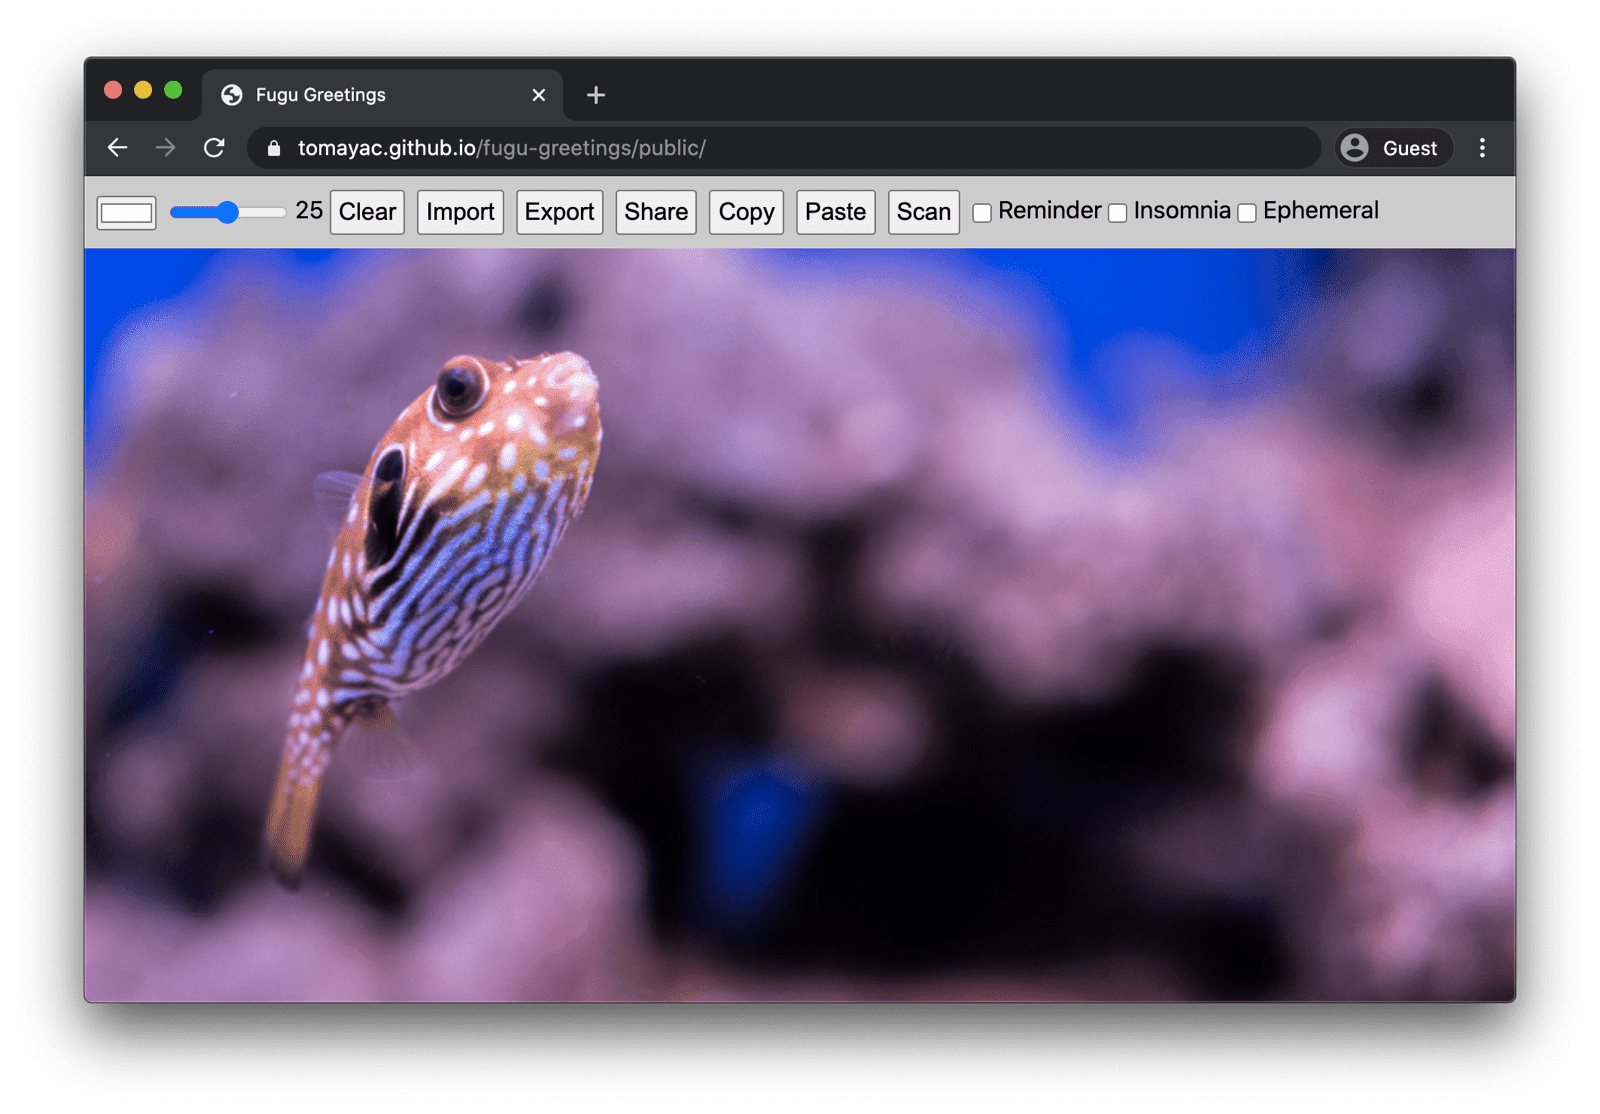 ברכות Fugu שפועלות ב-Chrome במחשב עם הרבה תכונות זמינות.